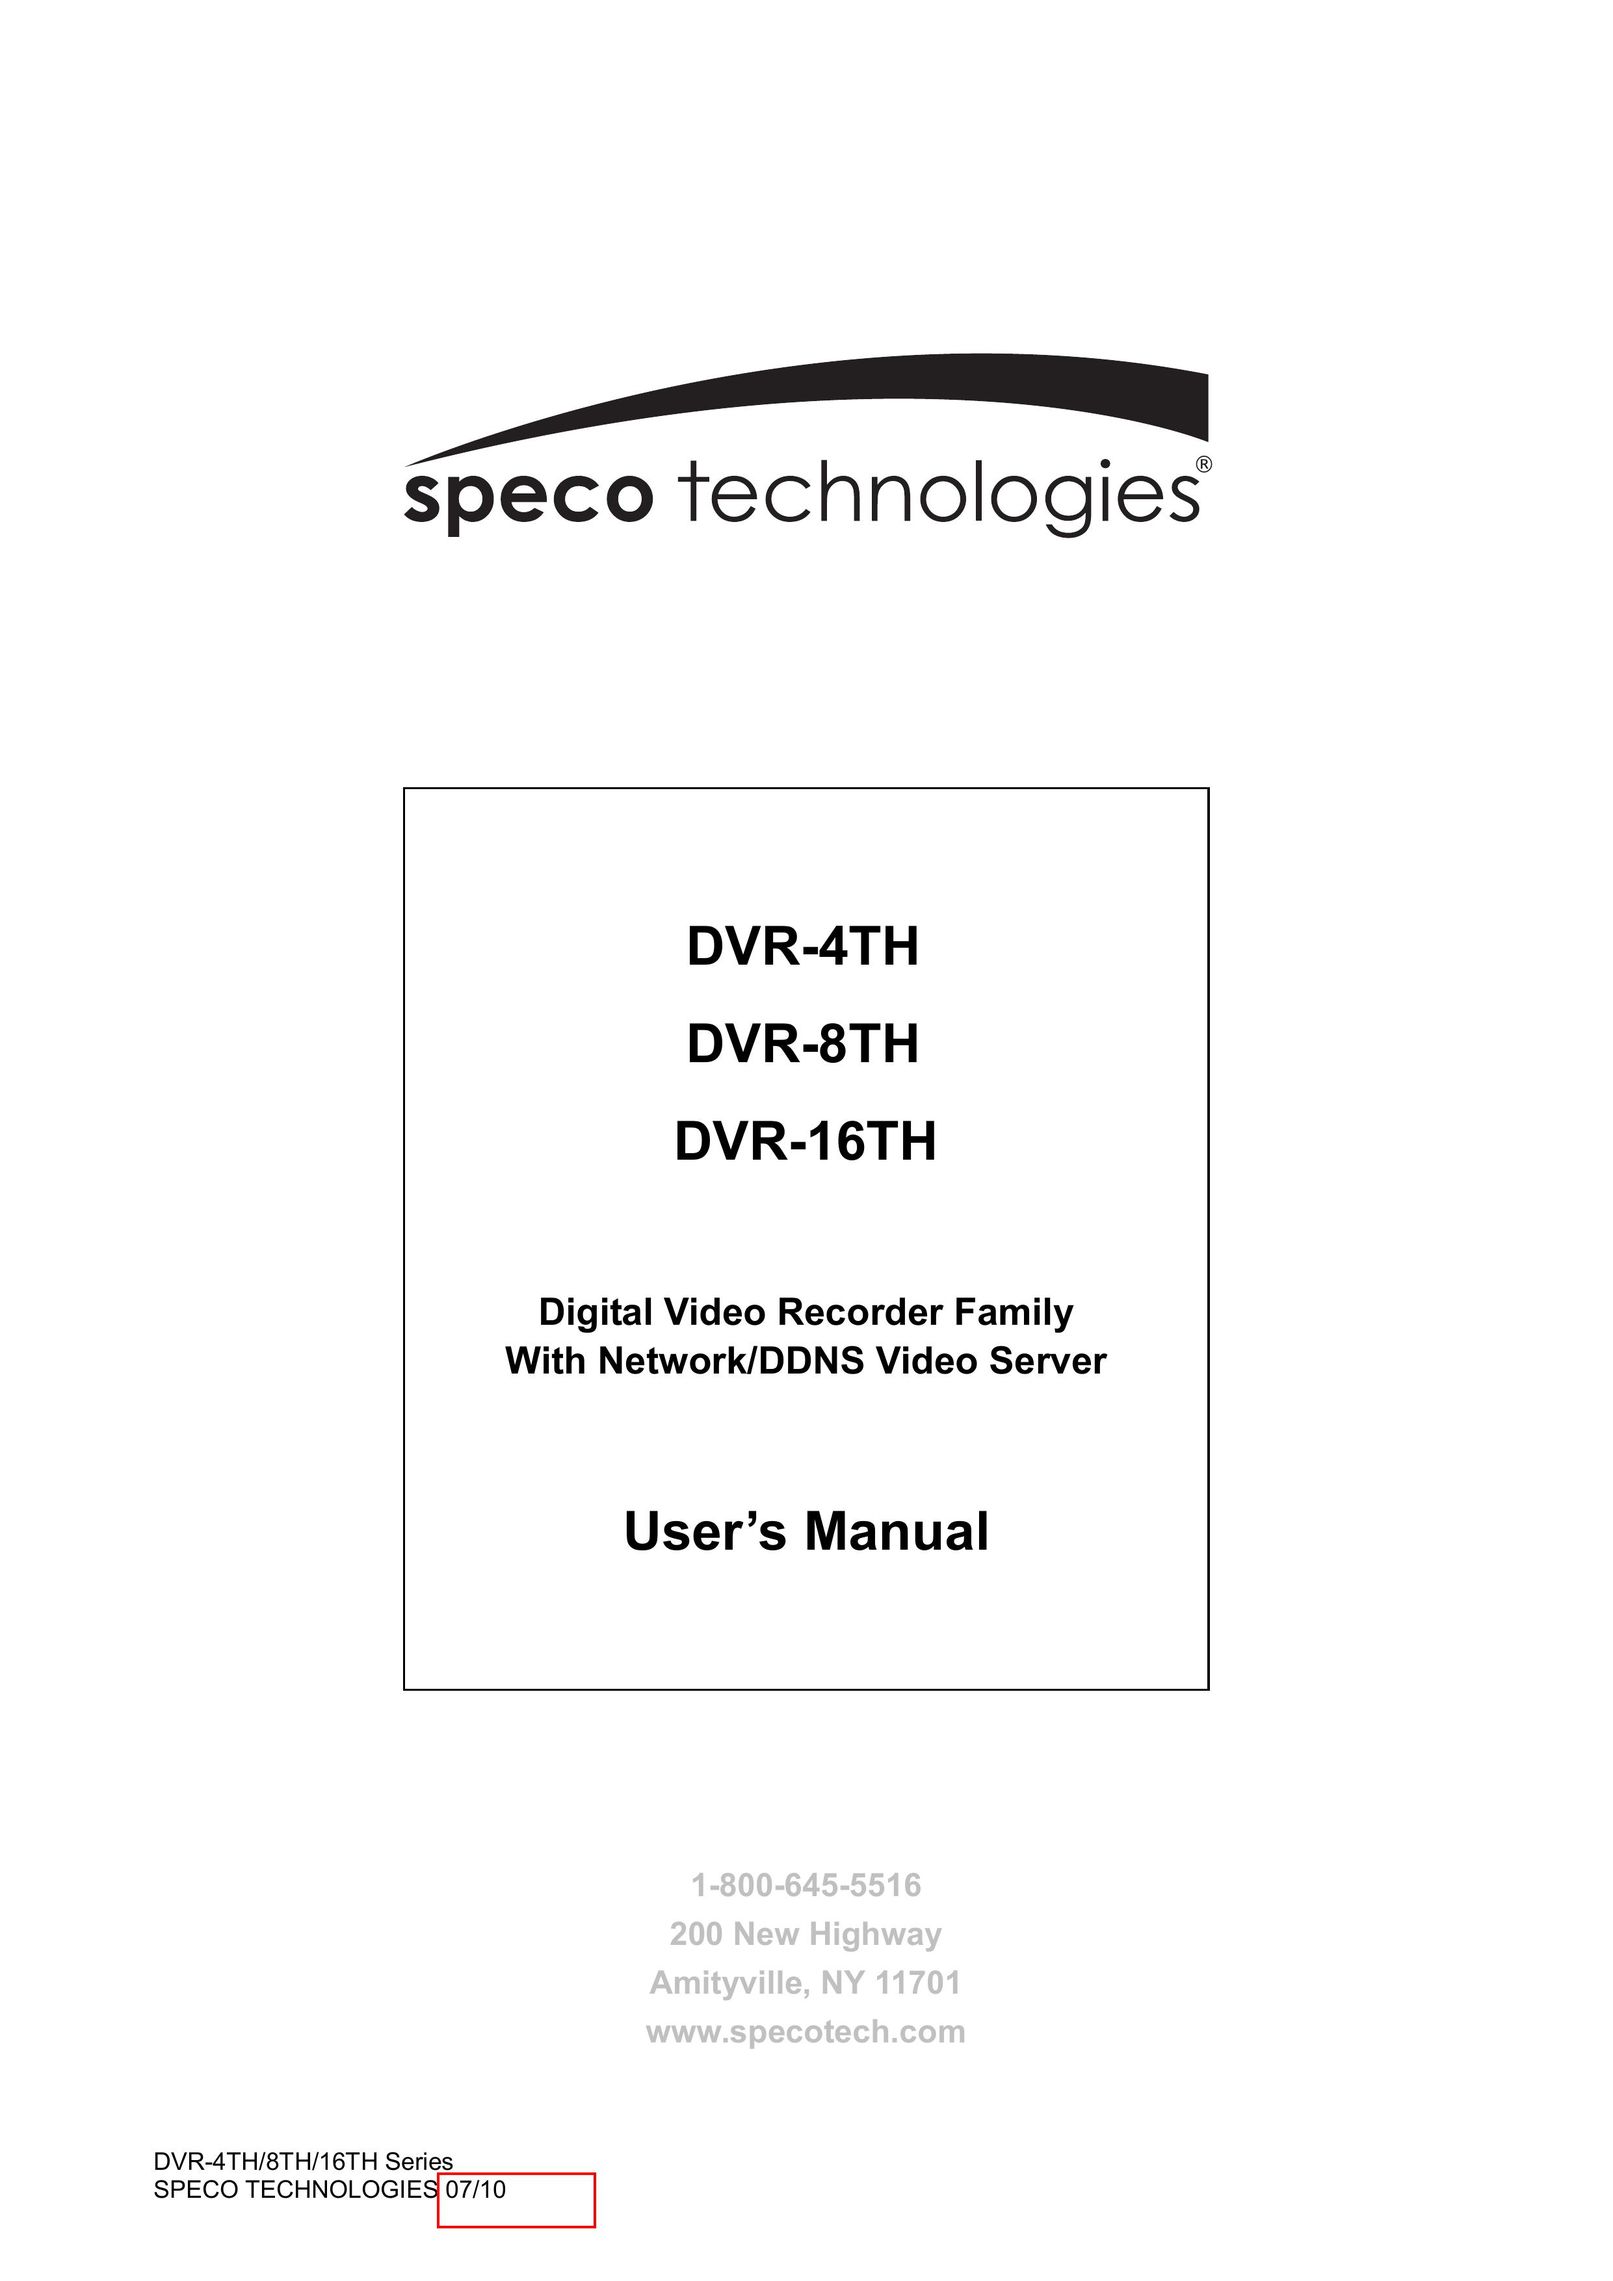 Samsung DVR-16TH DVR User Manual